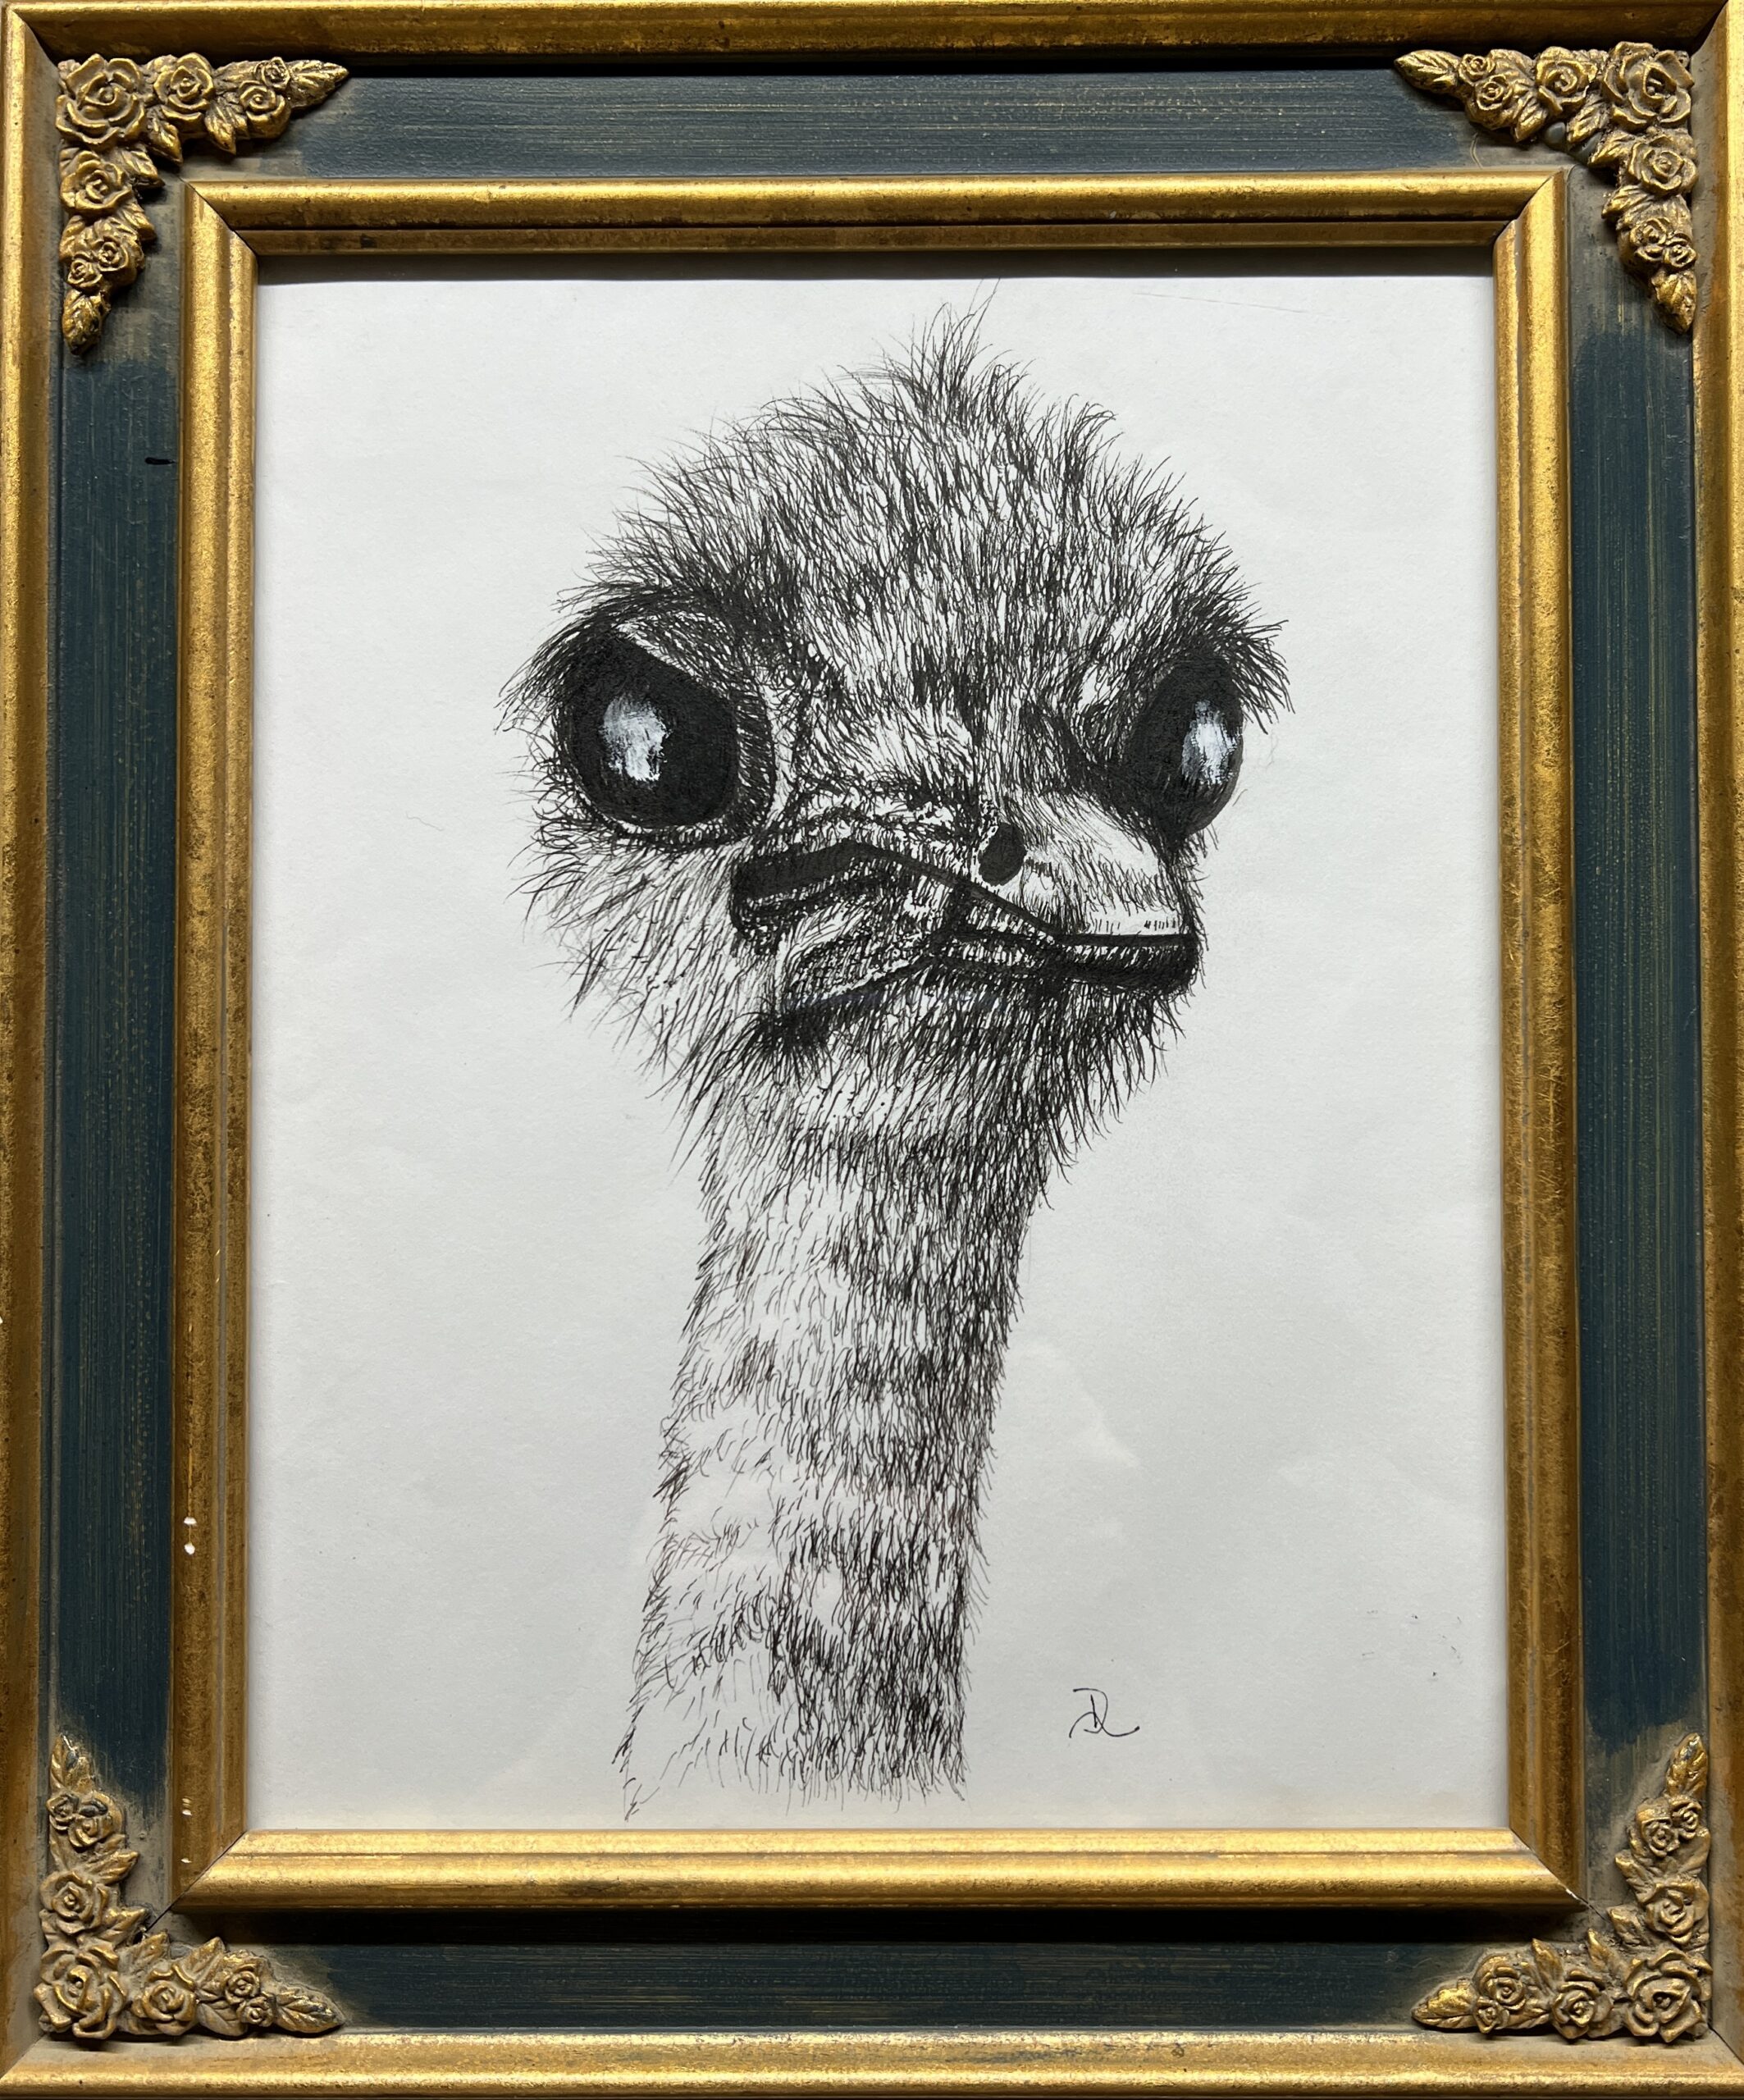 Arty The Slightly Askew Emu